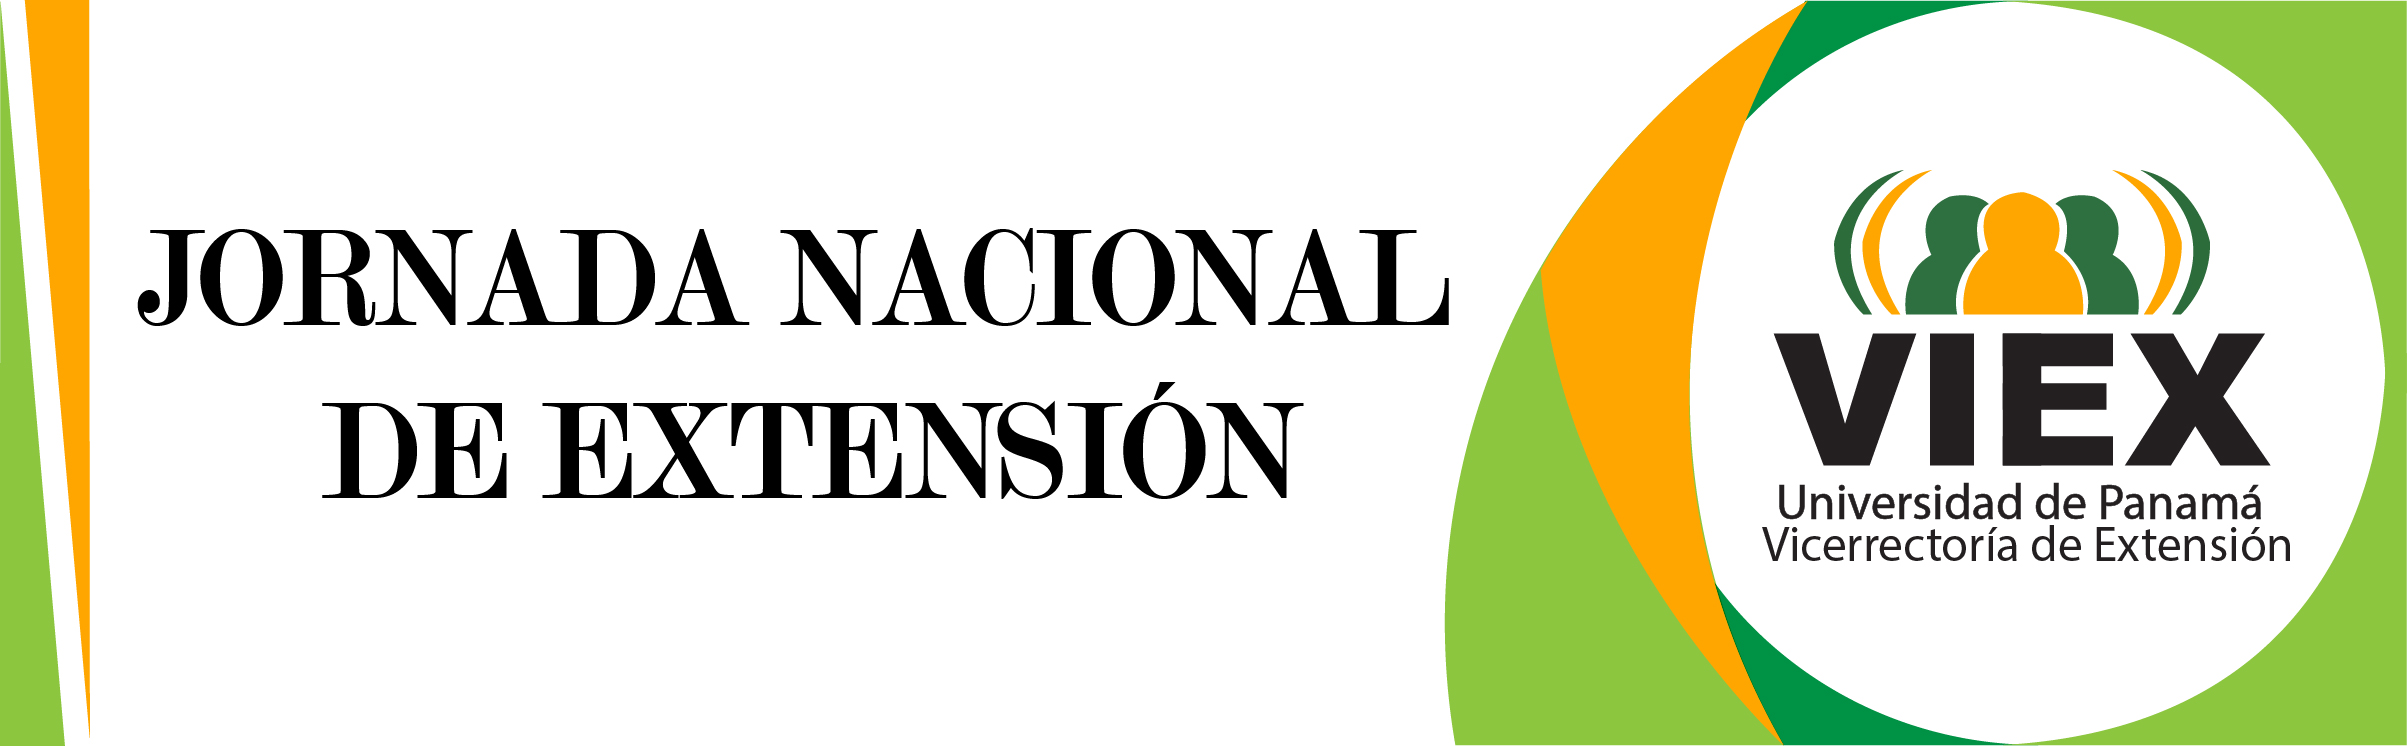 JORNADA NACIOnAL DE EXTENSION